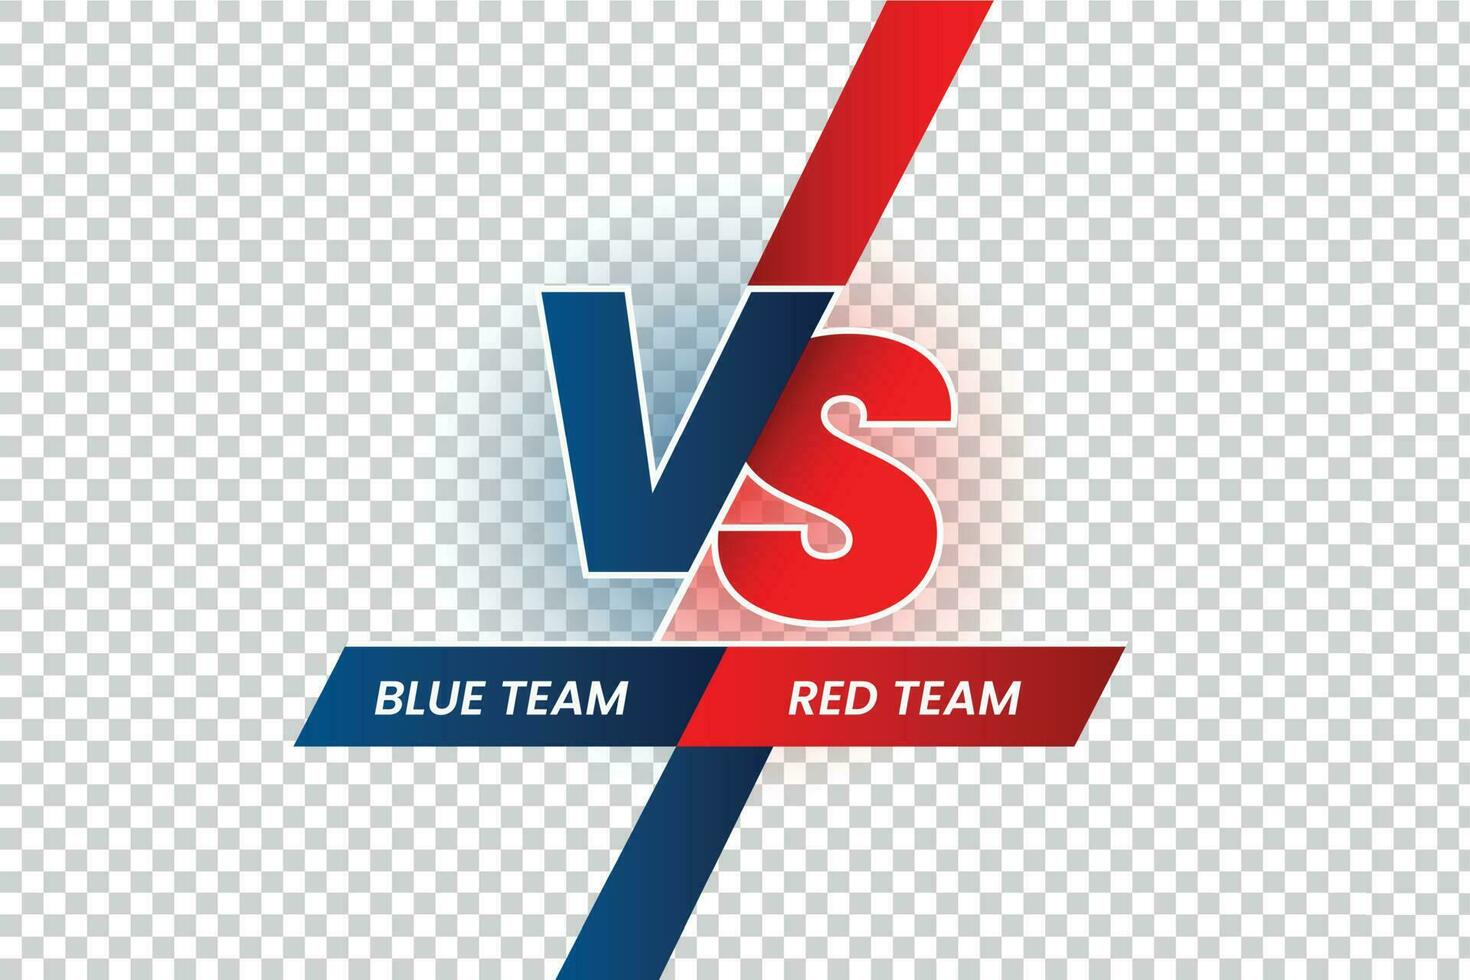 versus duelo titular. batalla rojo vs azul equipo marco, juego partido competencia y equipos confrontación aislado vector ilustración